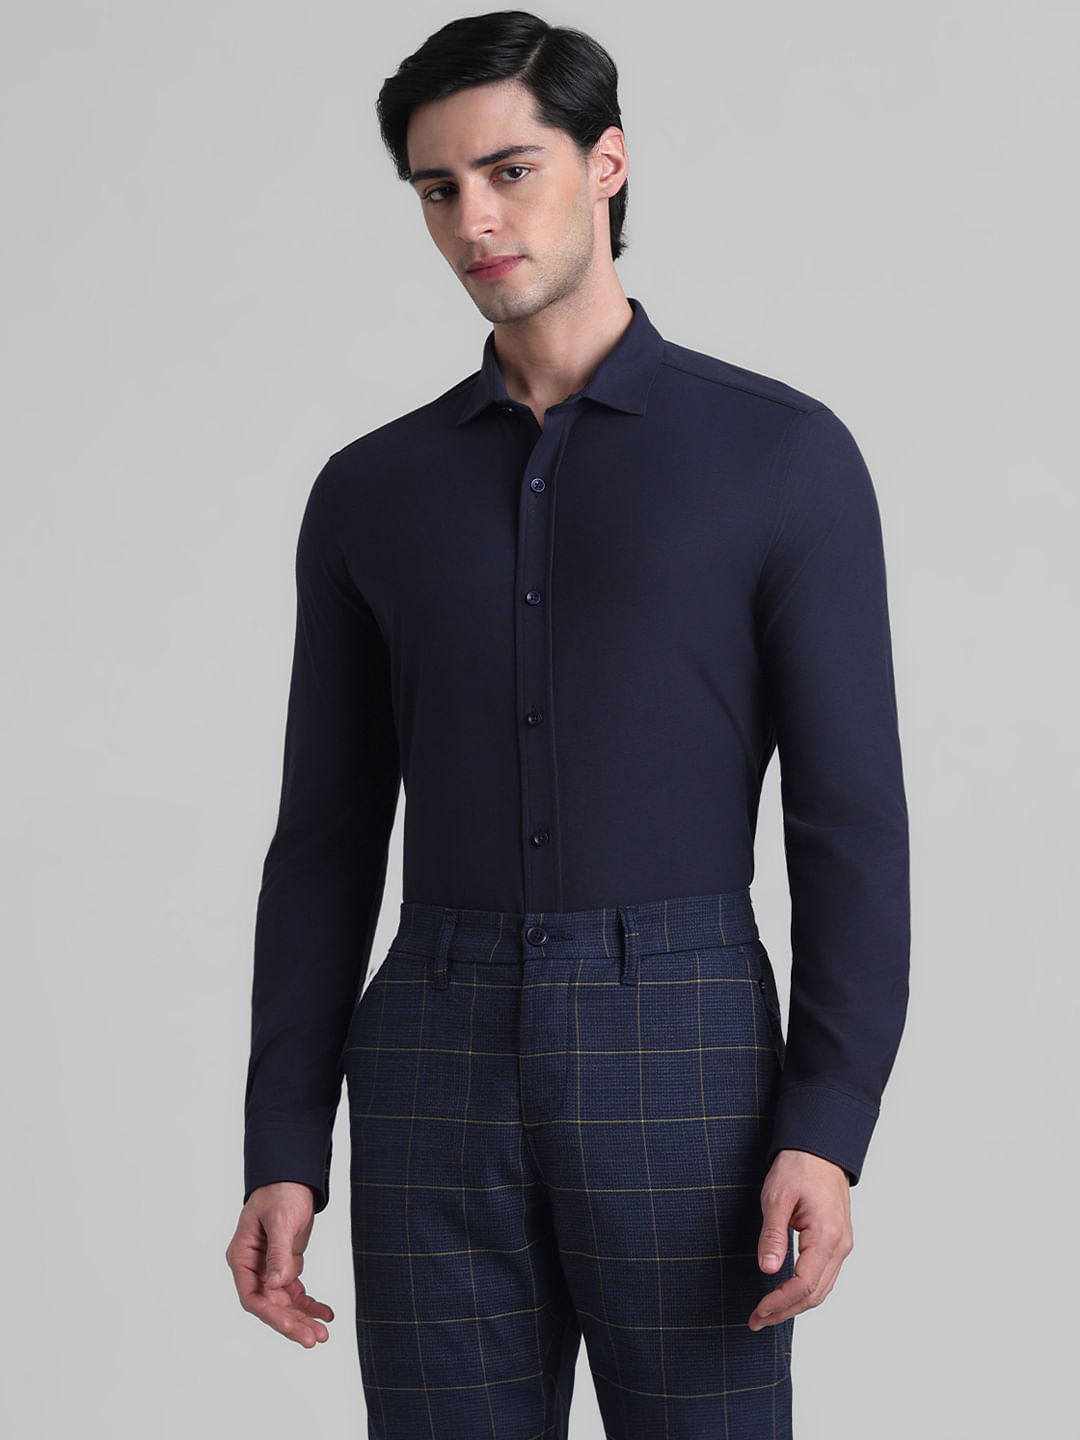 Jersey Shirt Swiss Cotton Tailor Fit | van Laack